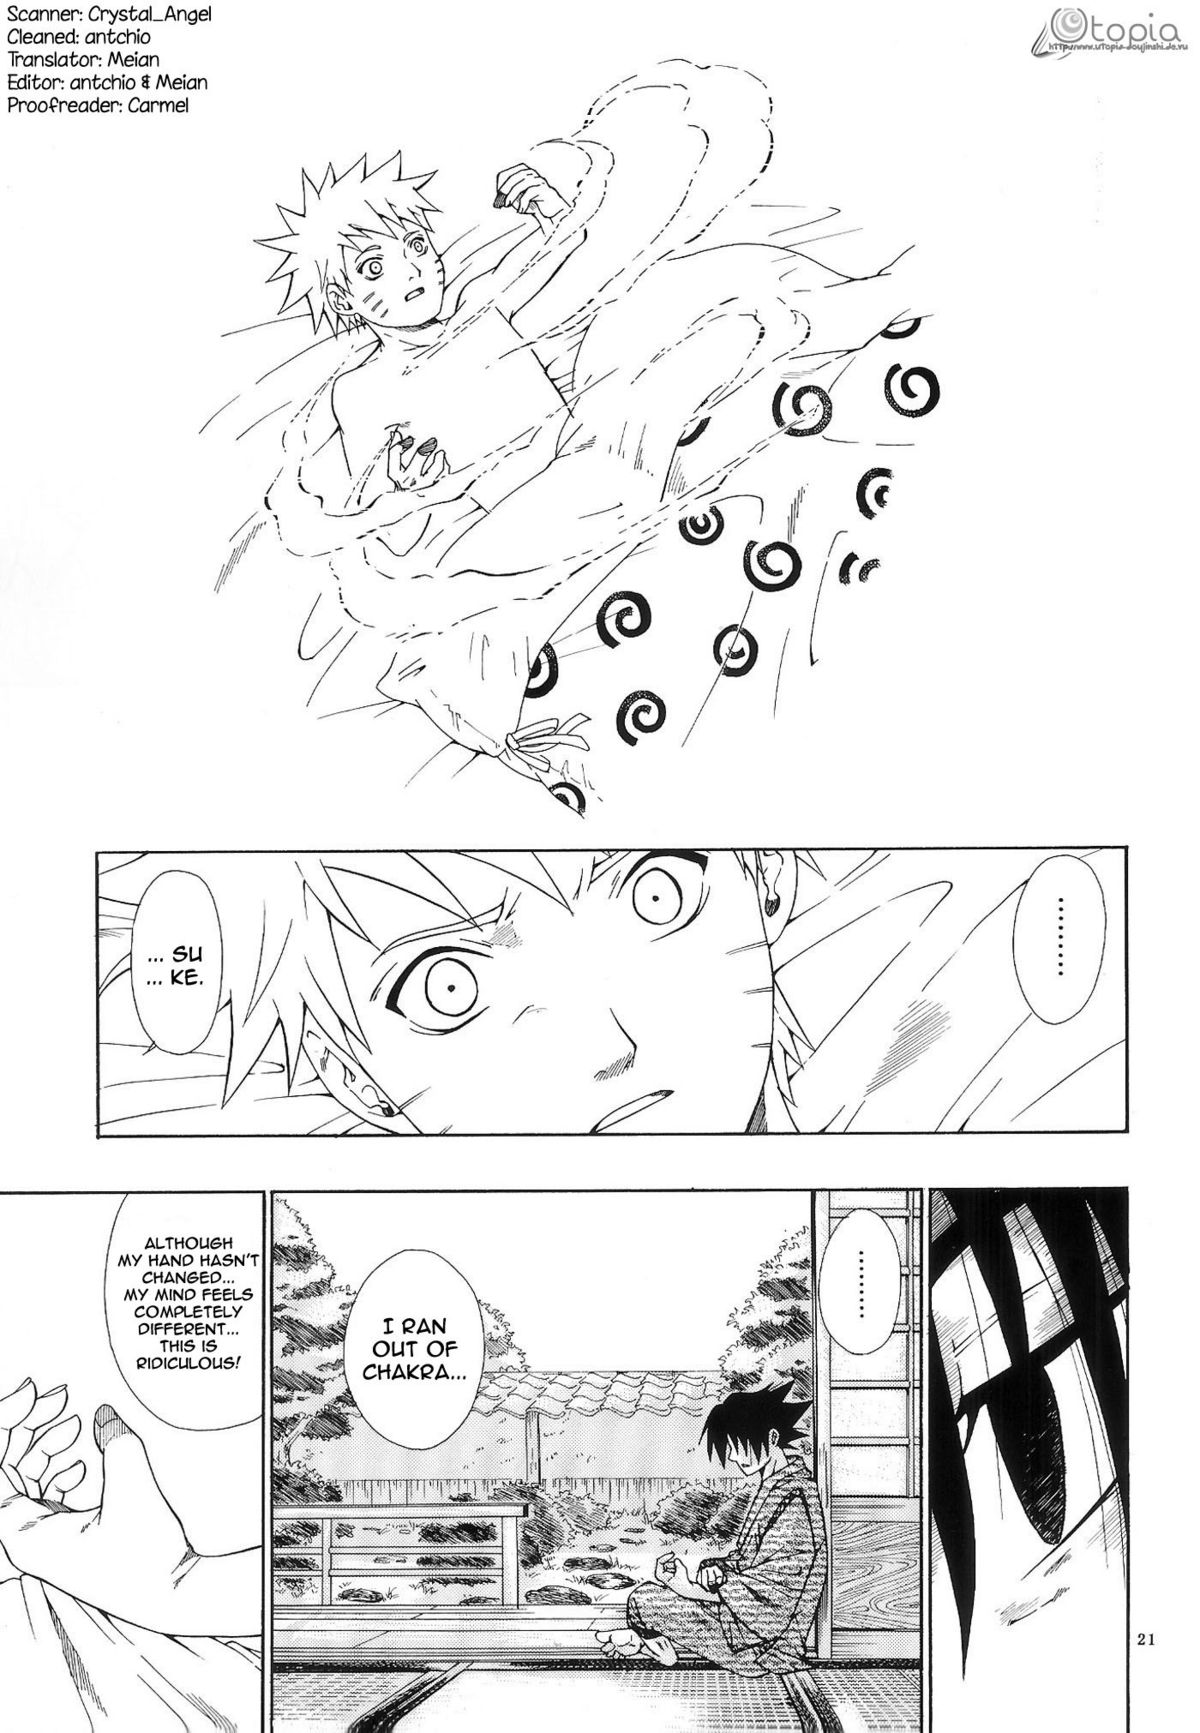 ERO ERO²: Volume 1.5  (NARUTO) [Sasuke X Naruto] YAOI -ENG- page 20 full